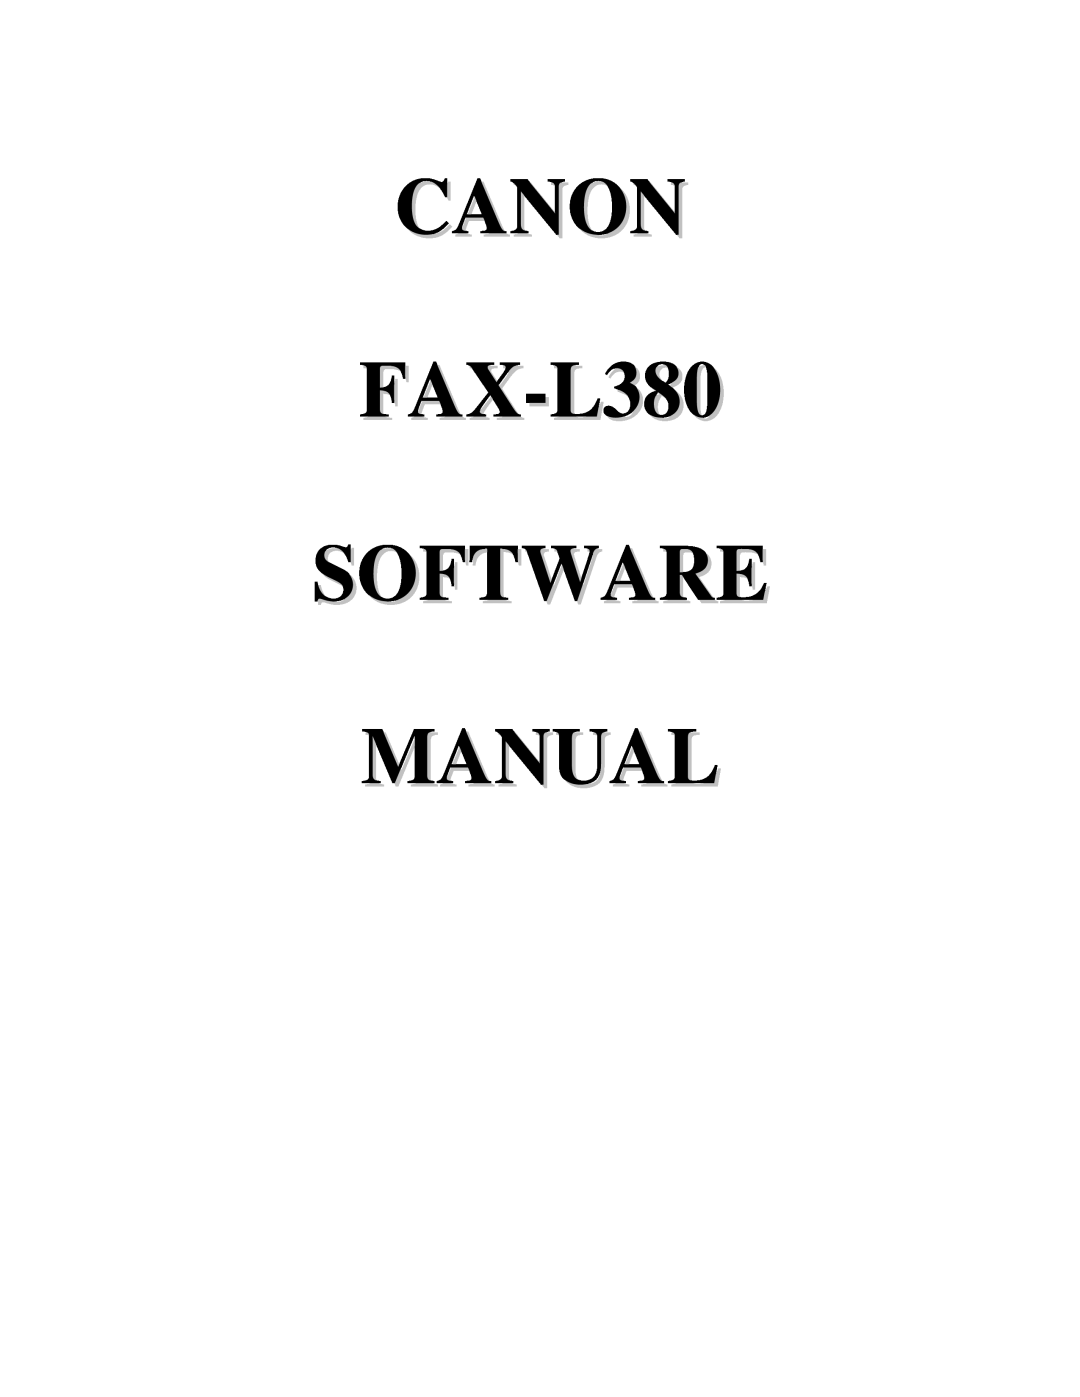 Canon manual CANON FAX-L380 SOFTWARE MANUAL 